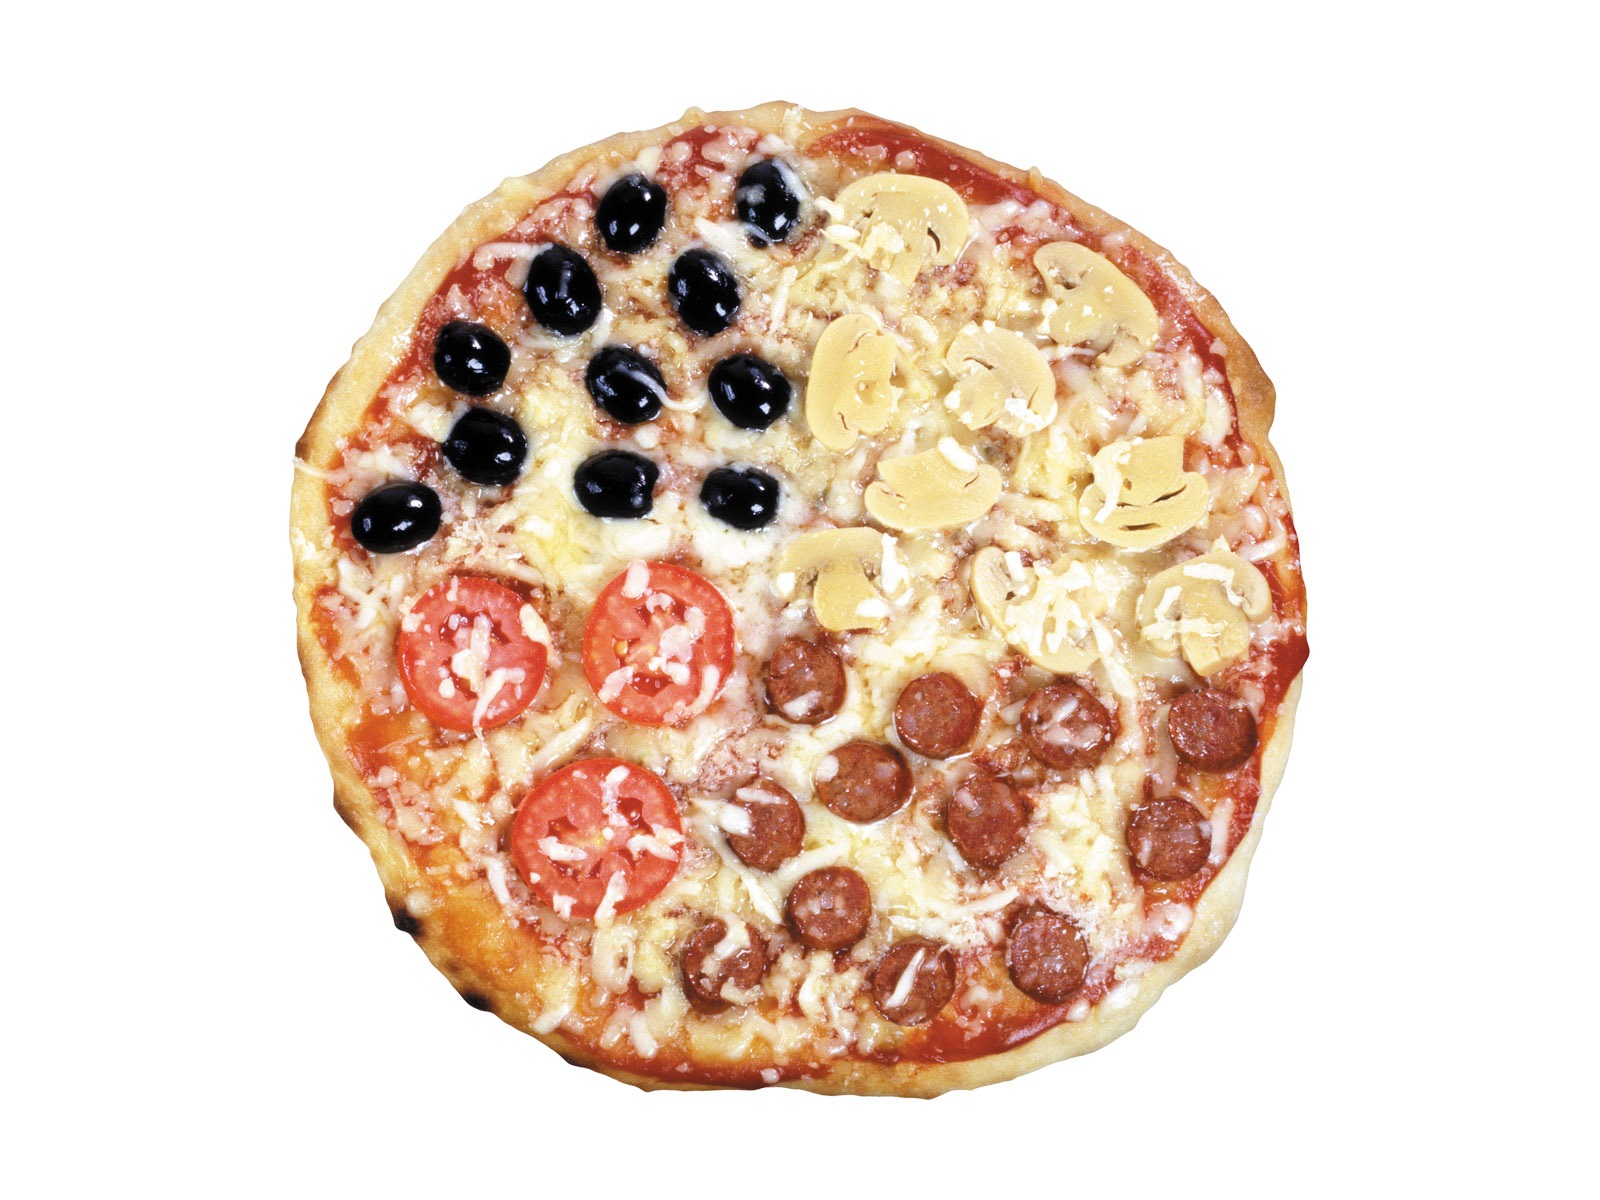 Fondos de pizzerías de Alimentos (3) #6 - 1600x1200